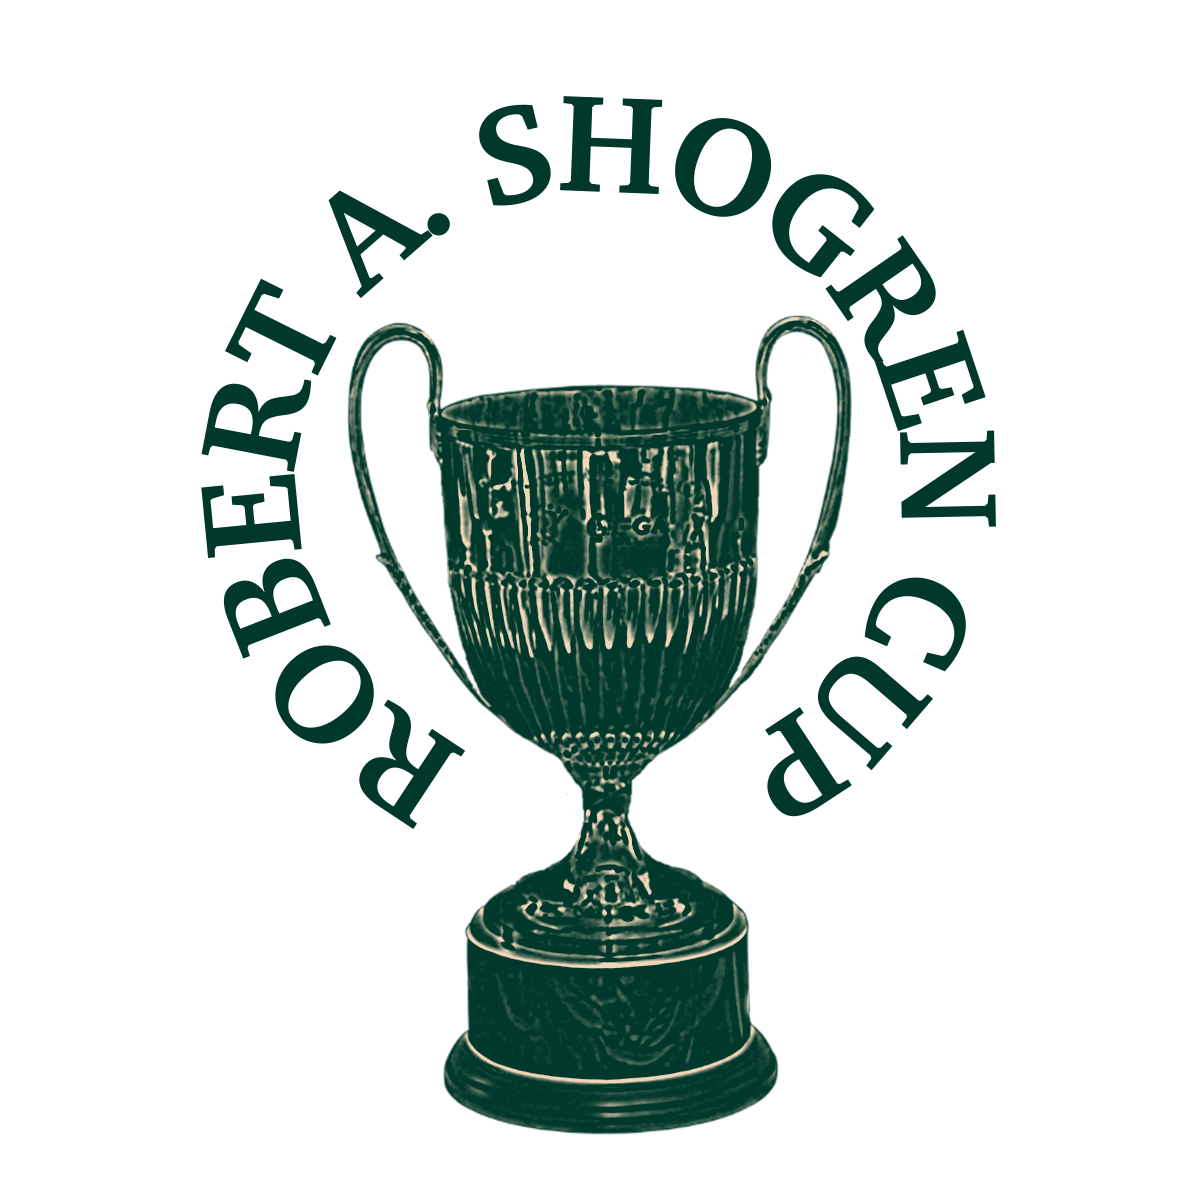 Robert A. Shogren Cup